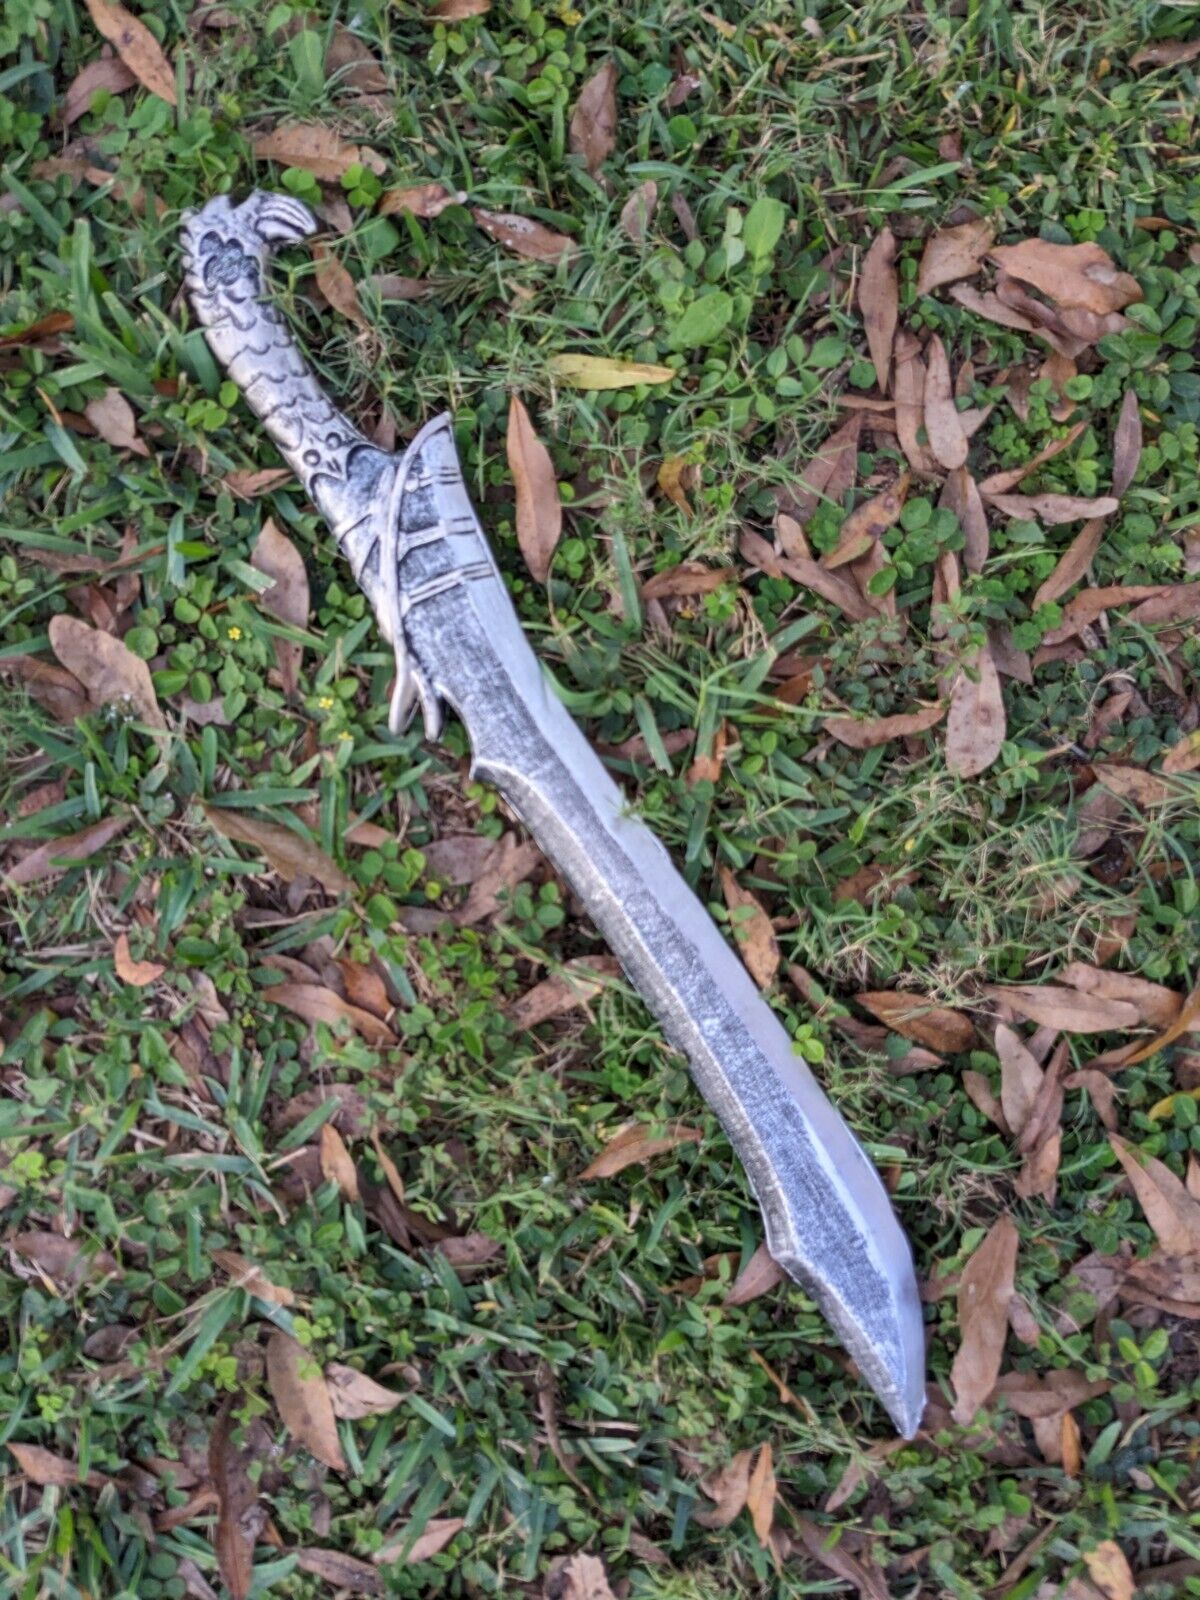 Polyurethane foam Sword